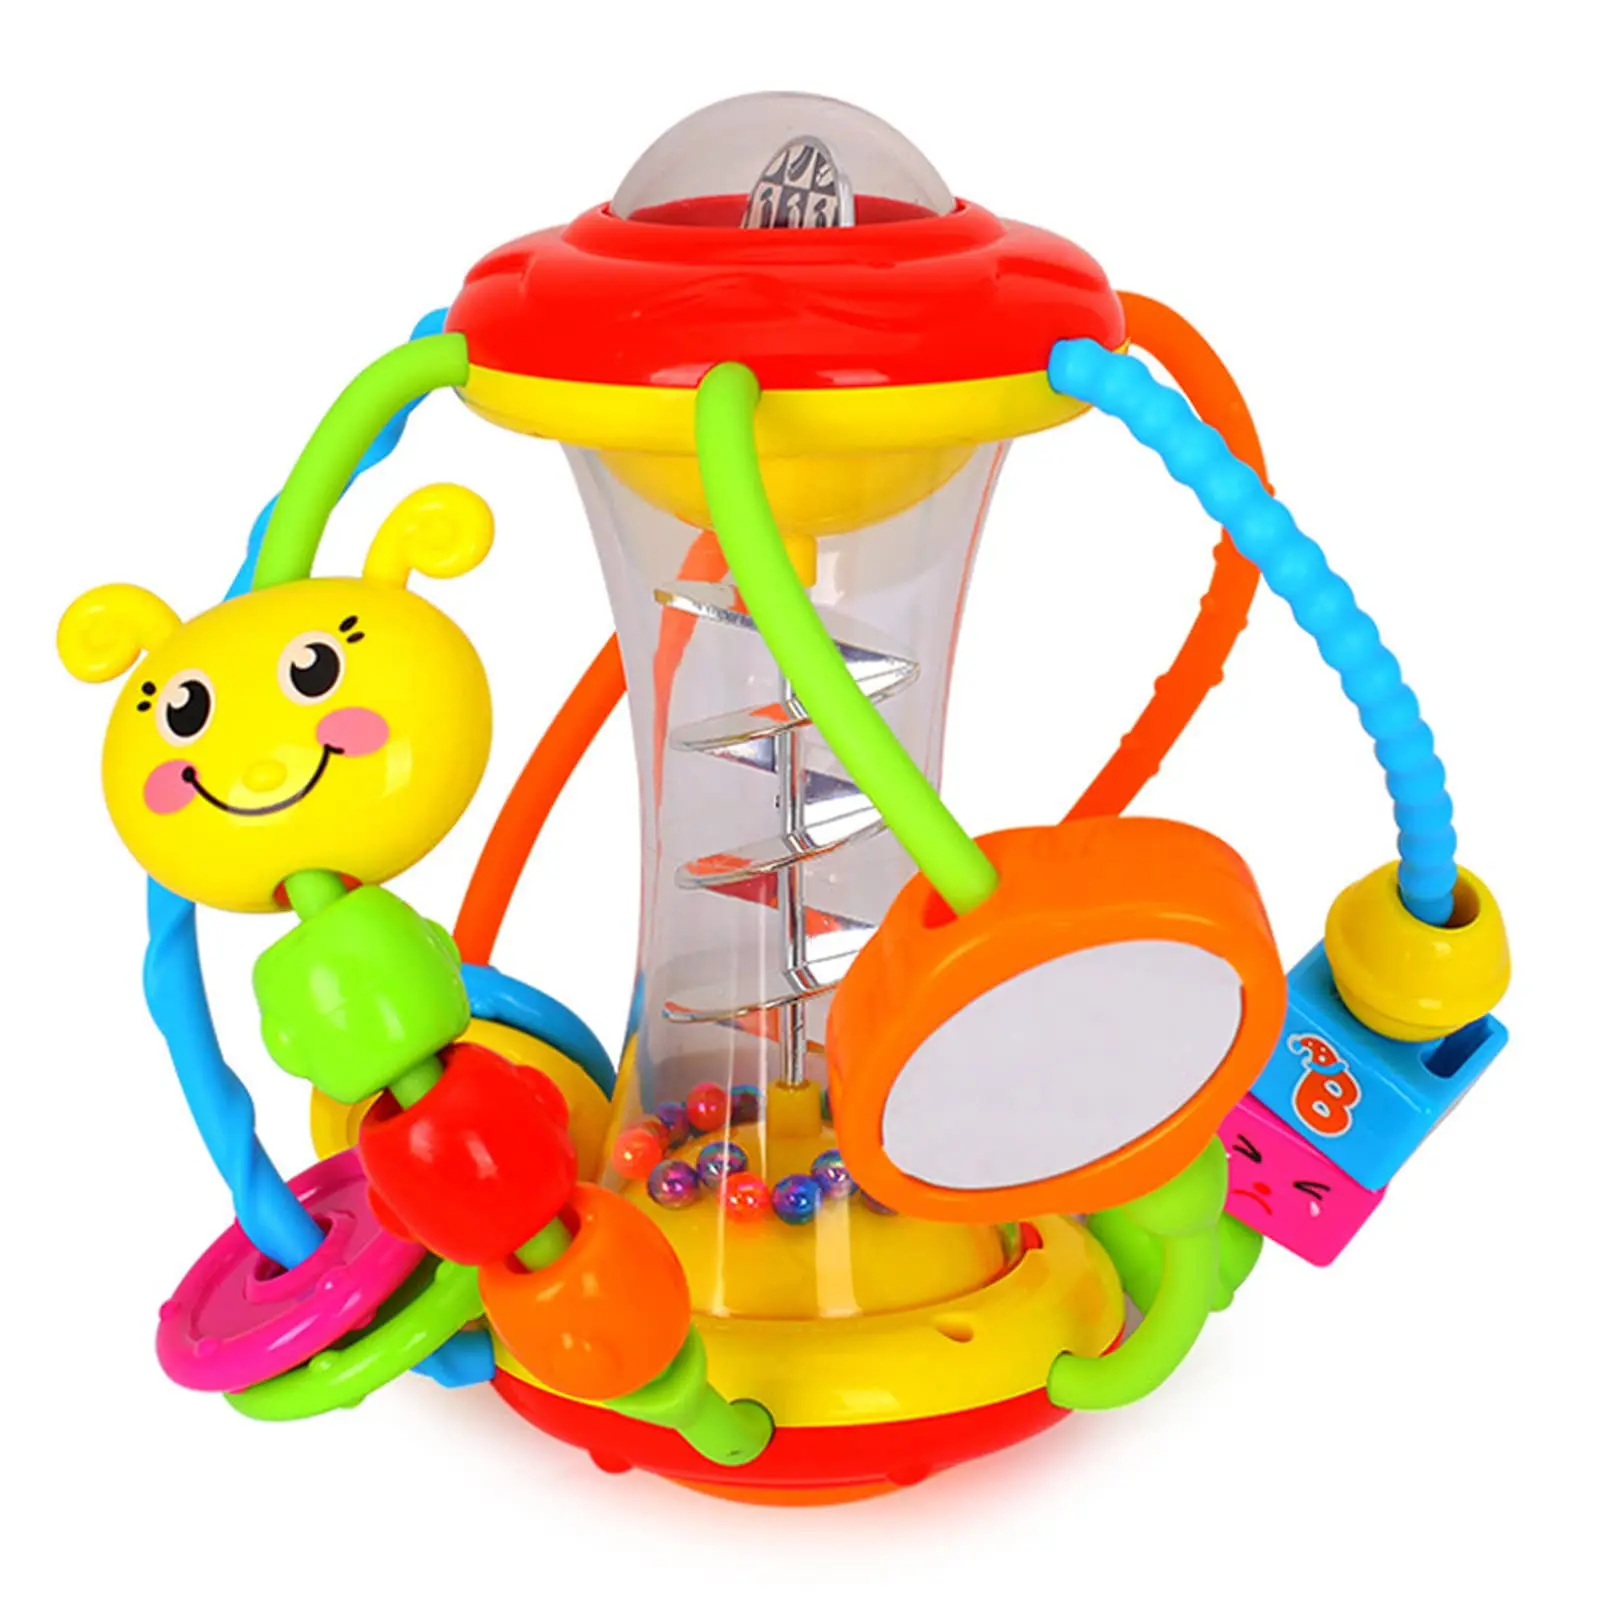 

Игрушки-погремушки для младенцев погремушка сенсорная игрушка для раннего образовательн сенсорный шар для активности,